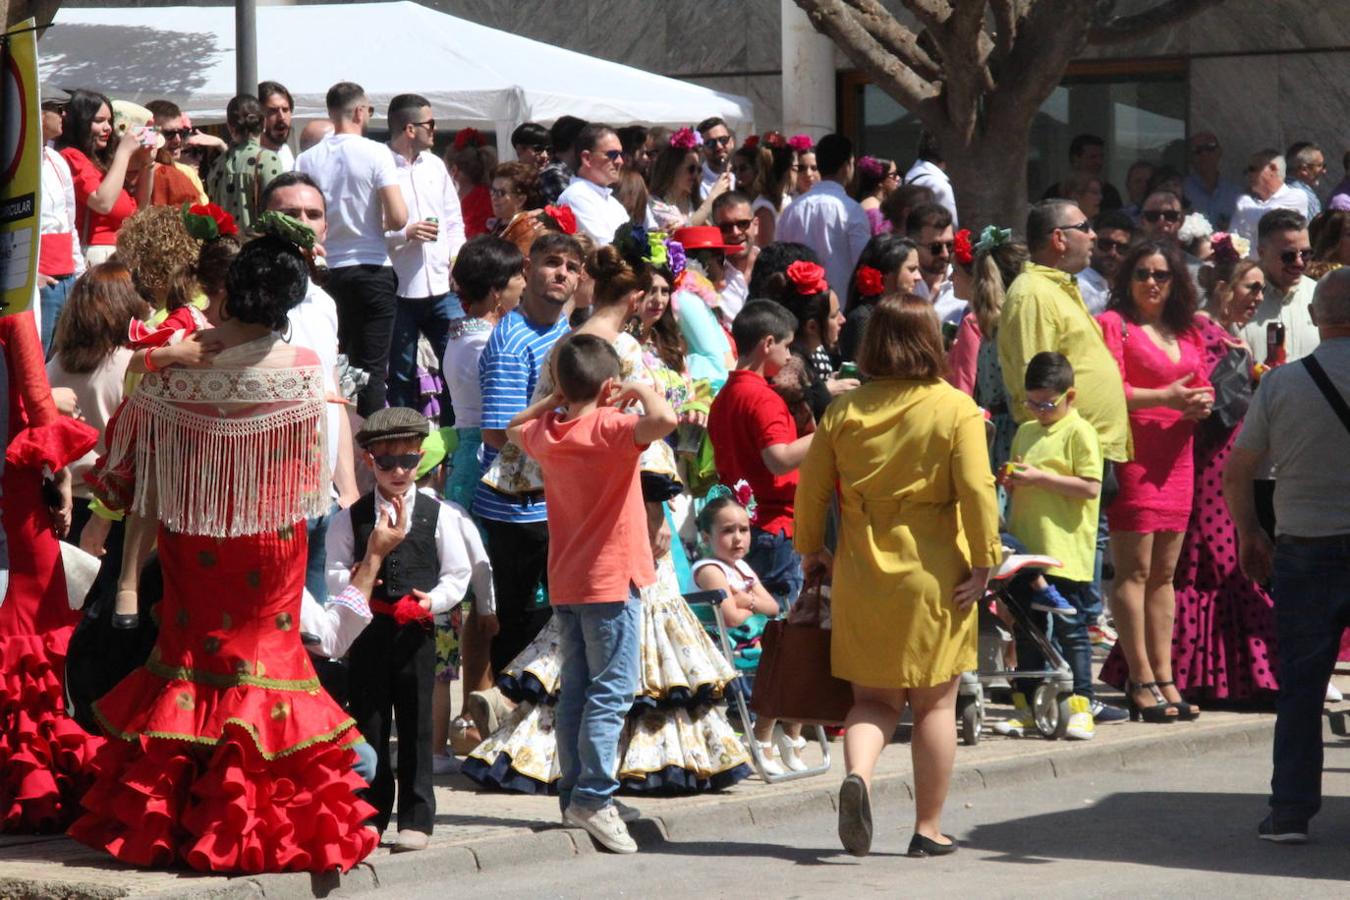 Fotos: Mile de personas acompañan a San Marcos por las calles de El Ejido